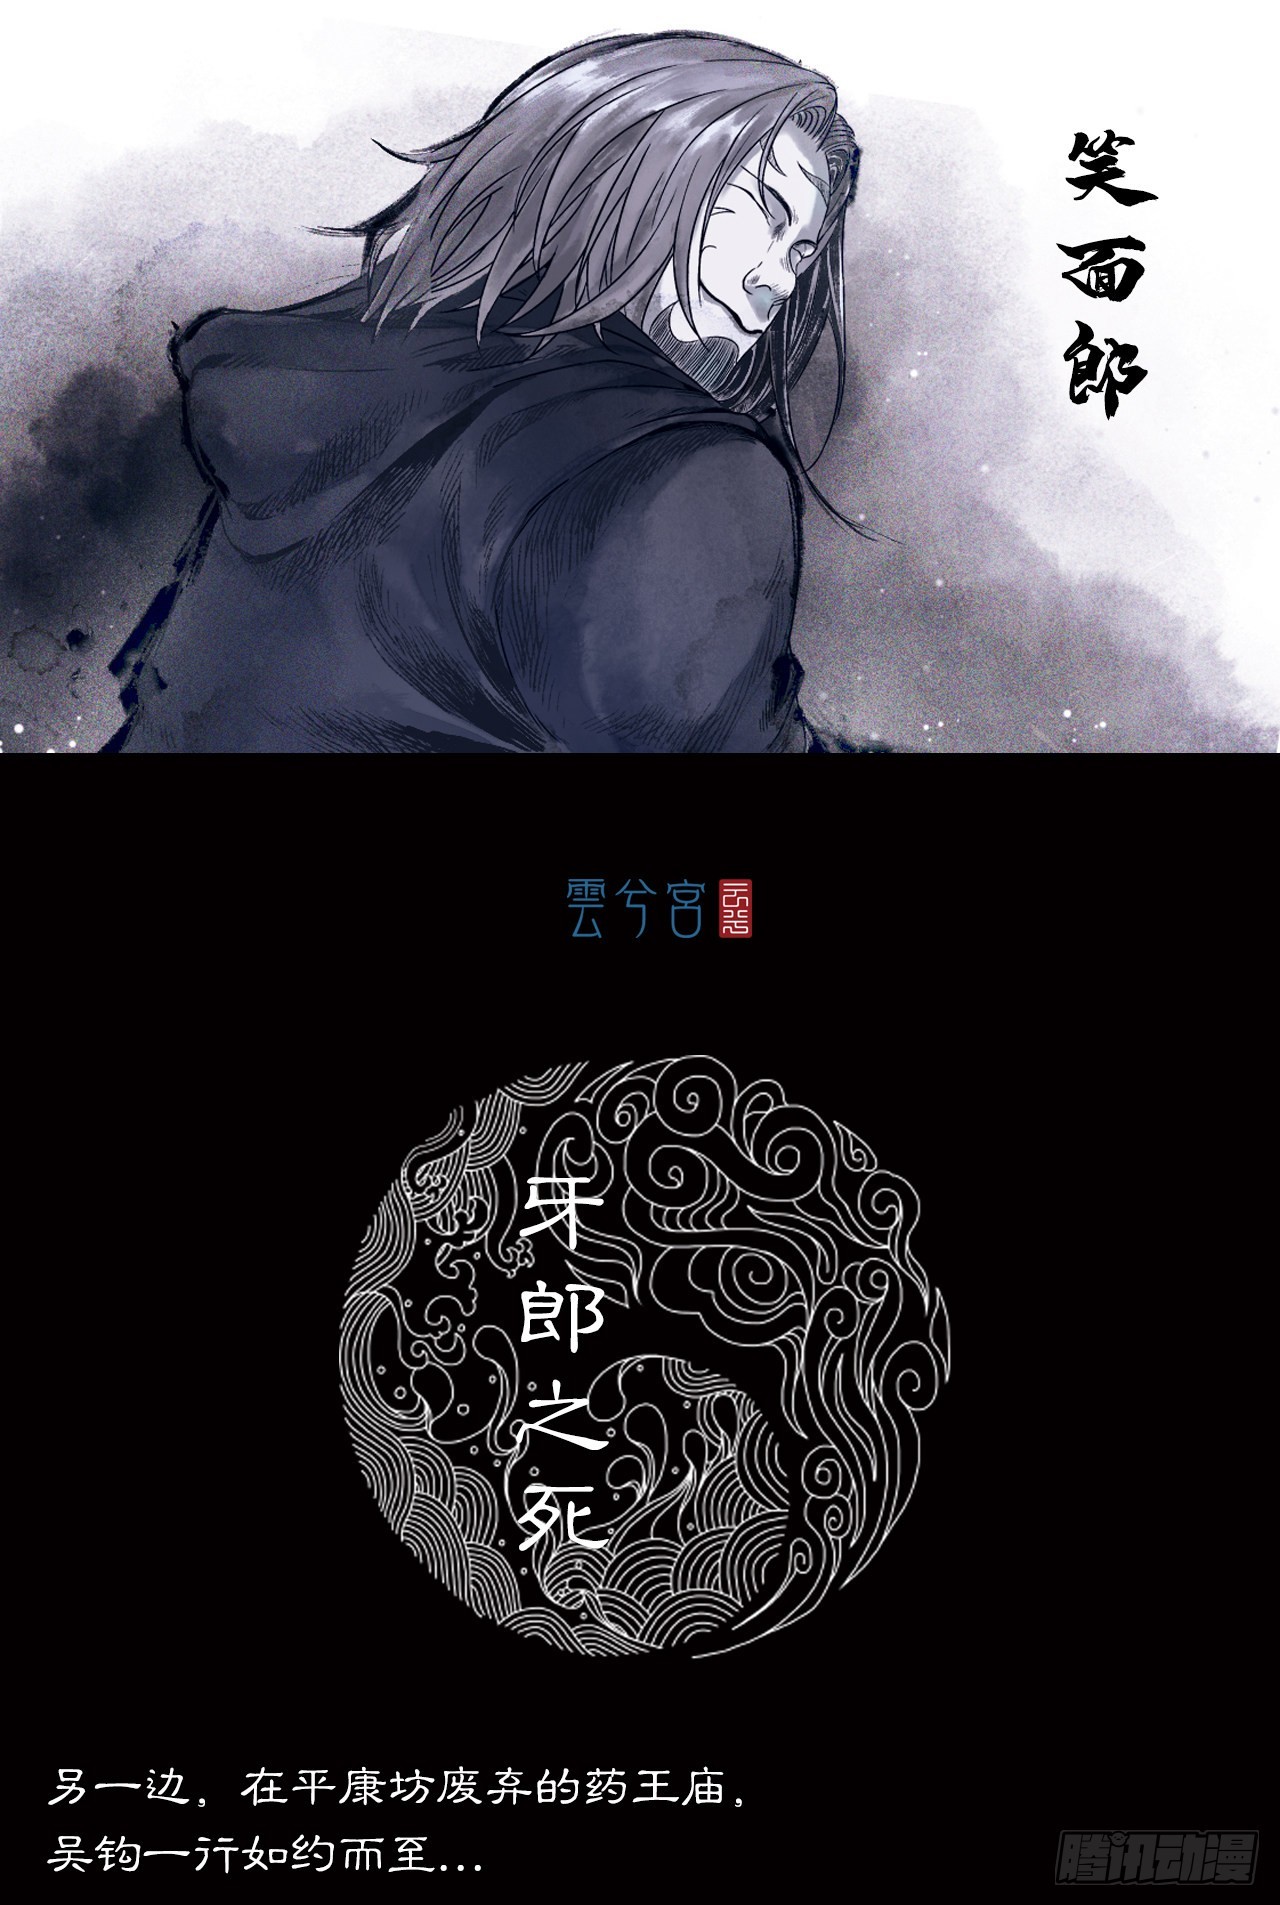 【三界志】神魔錄 - 牙郎之死 - 1